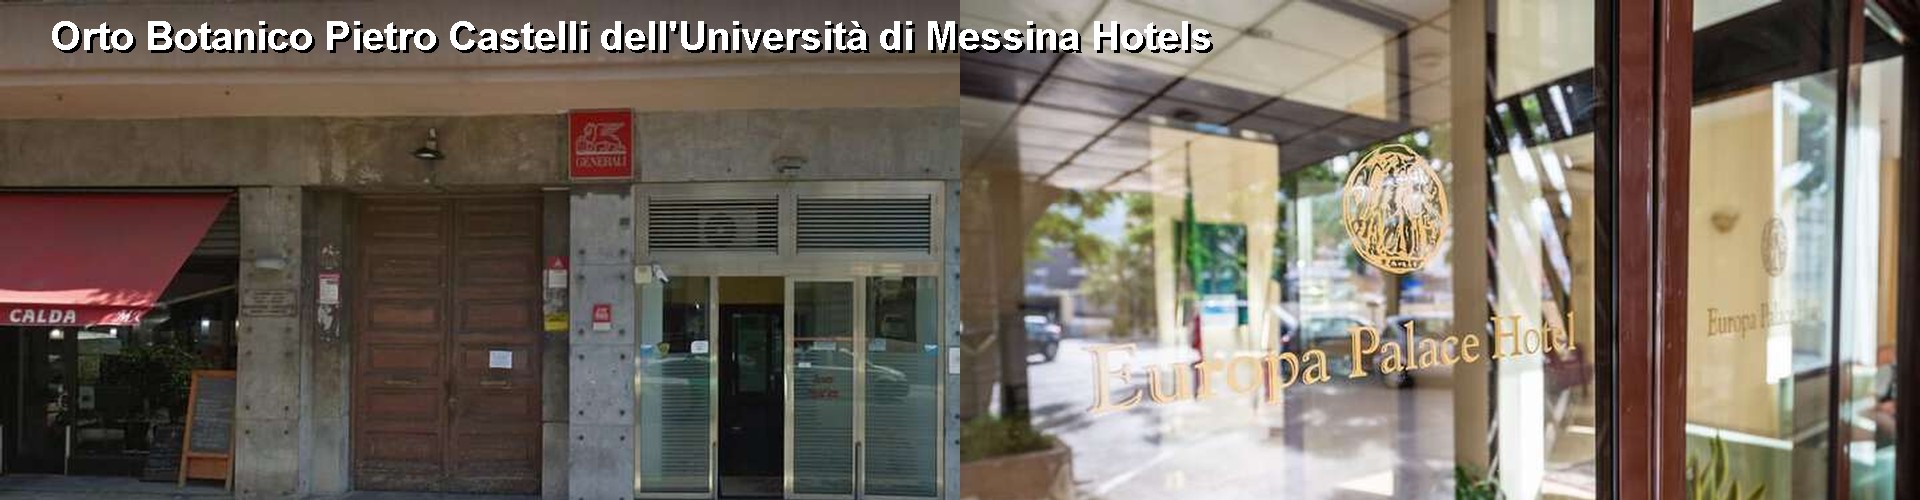 5 Best Hotels near Orto Botanico Pietro Castelli dell'Università di Messina